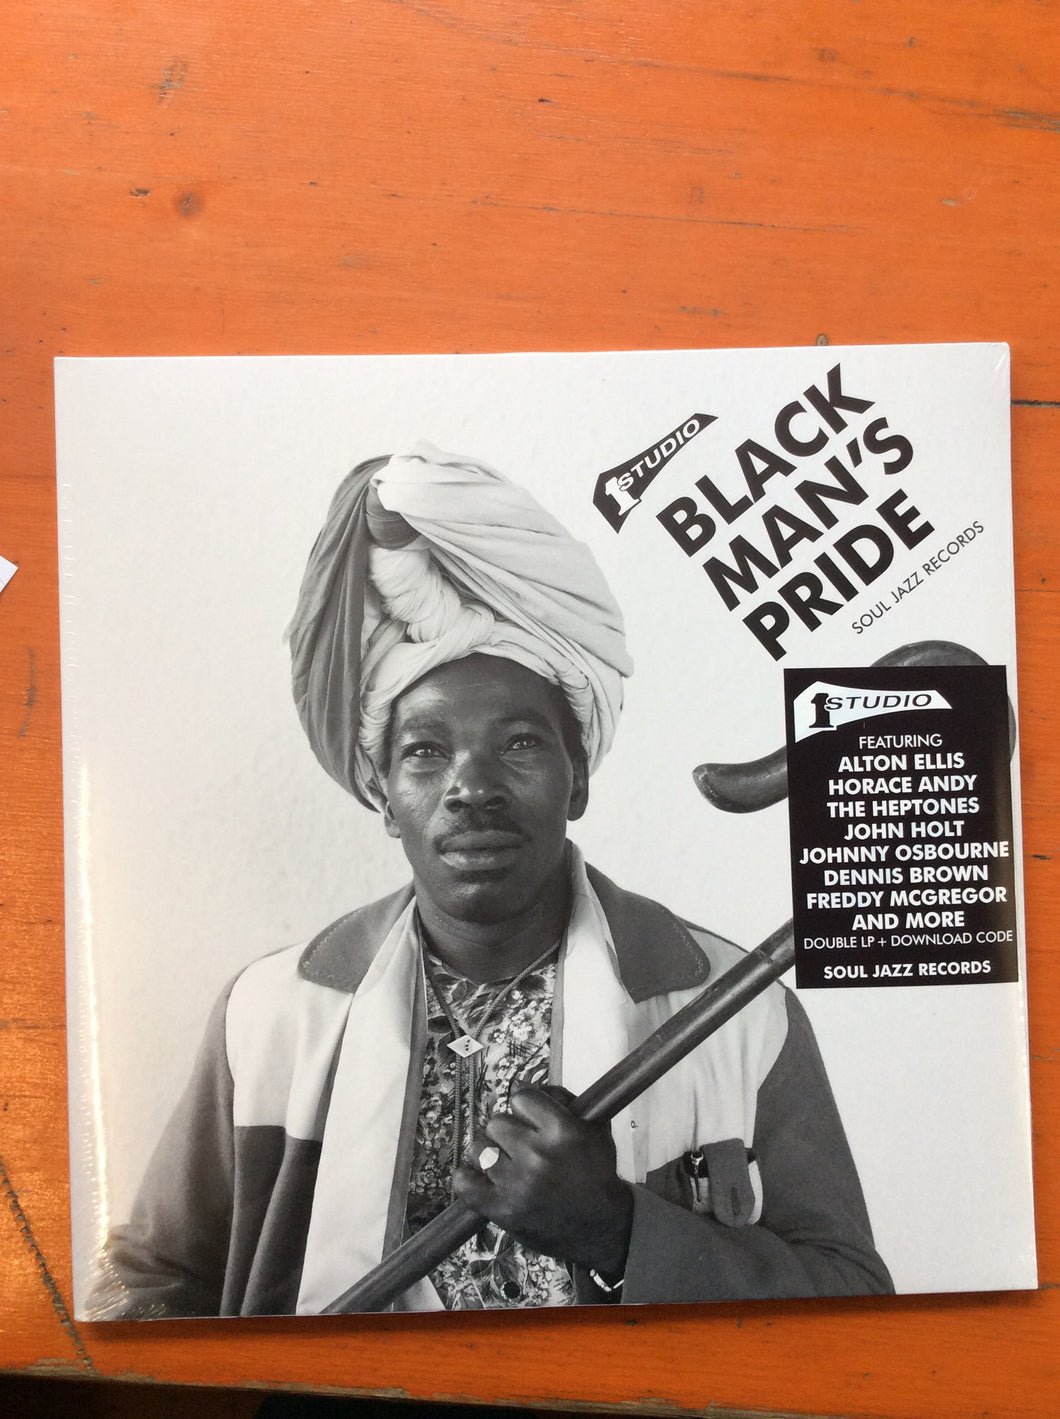 Soul Jazz Records - Studio One Black Man's Pride